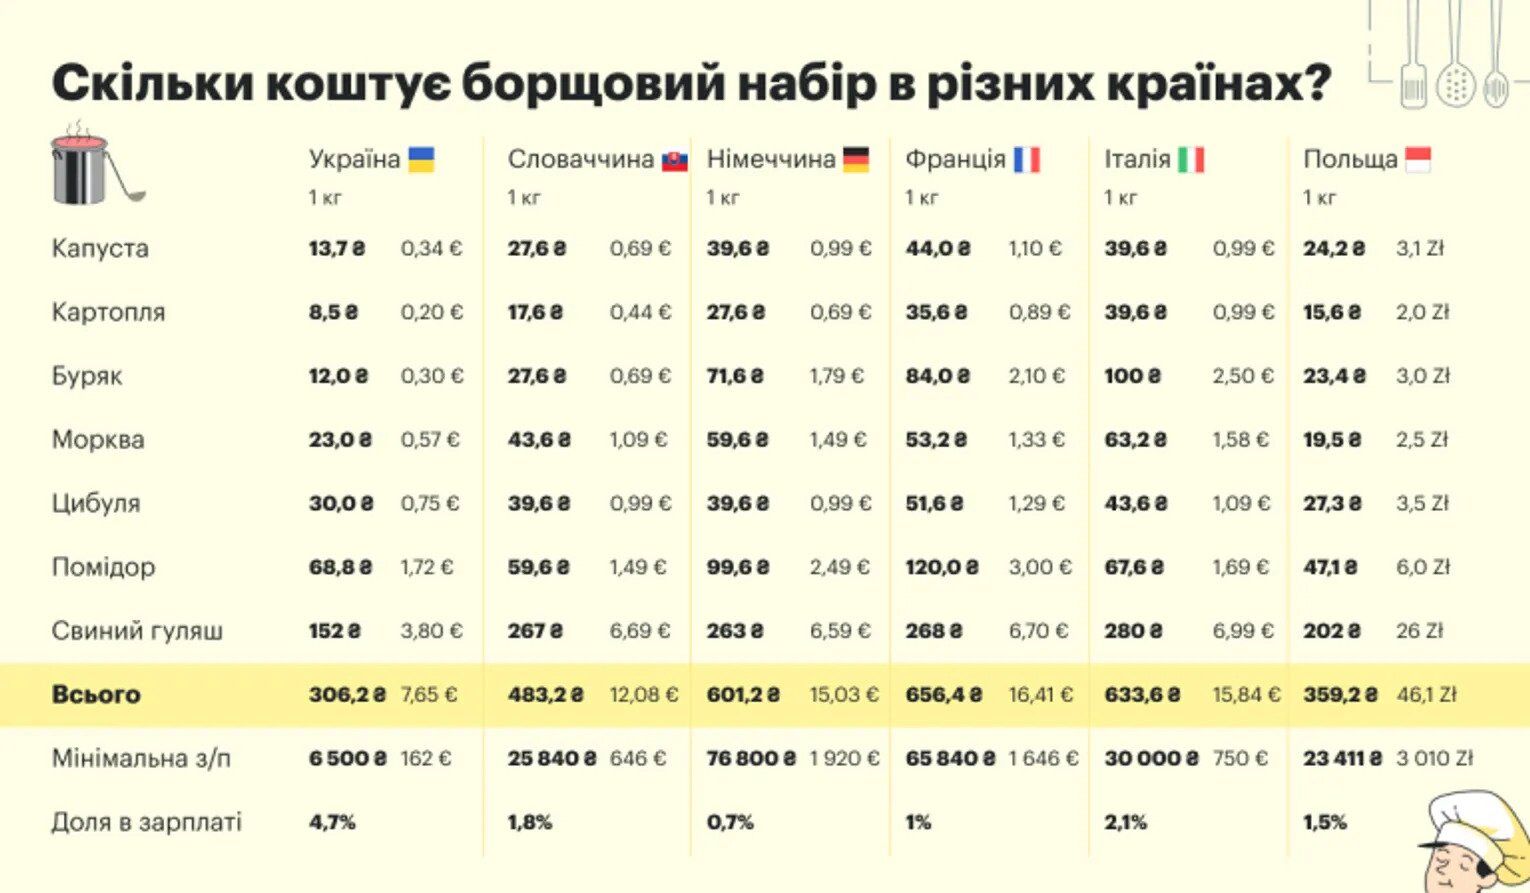 Сколько стоит борщ в Украине и странах ЕС